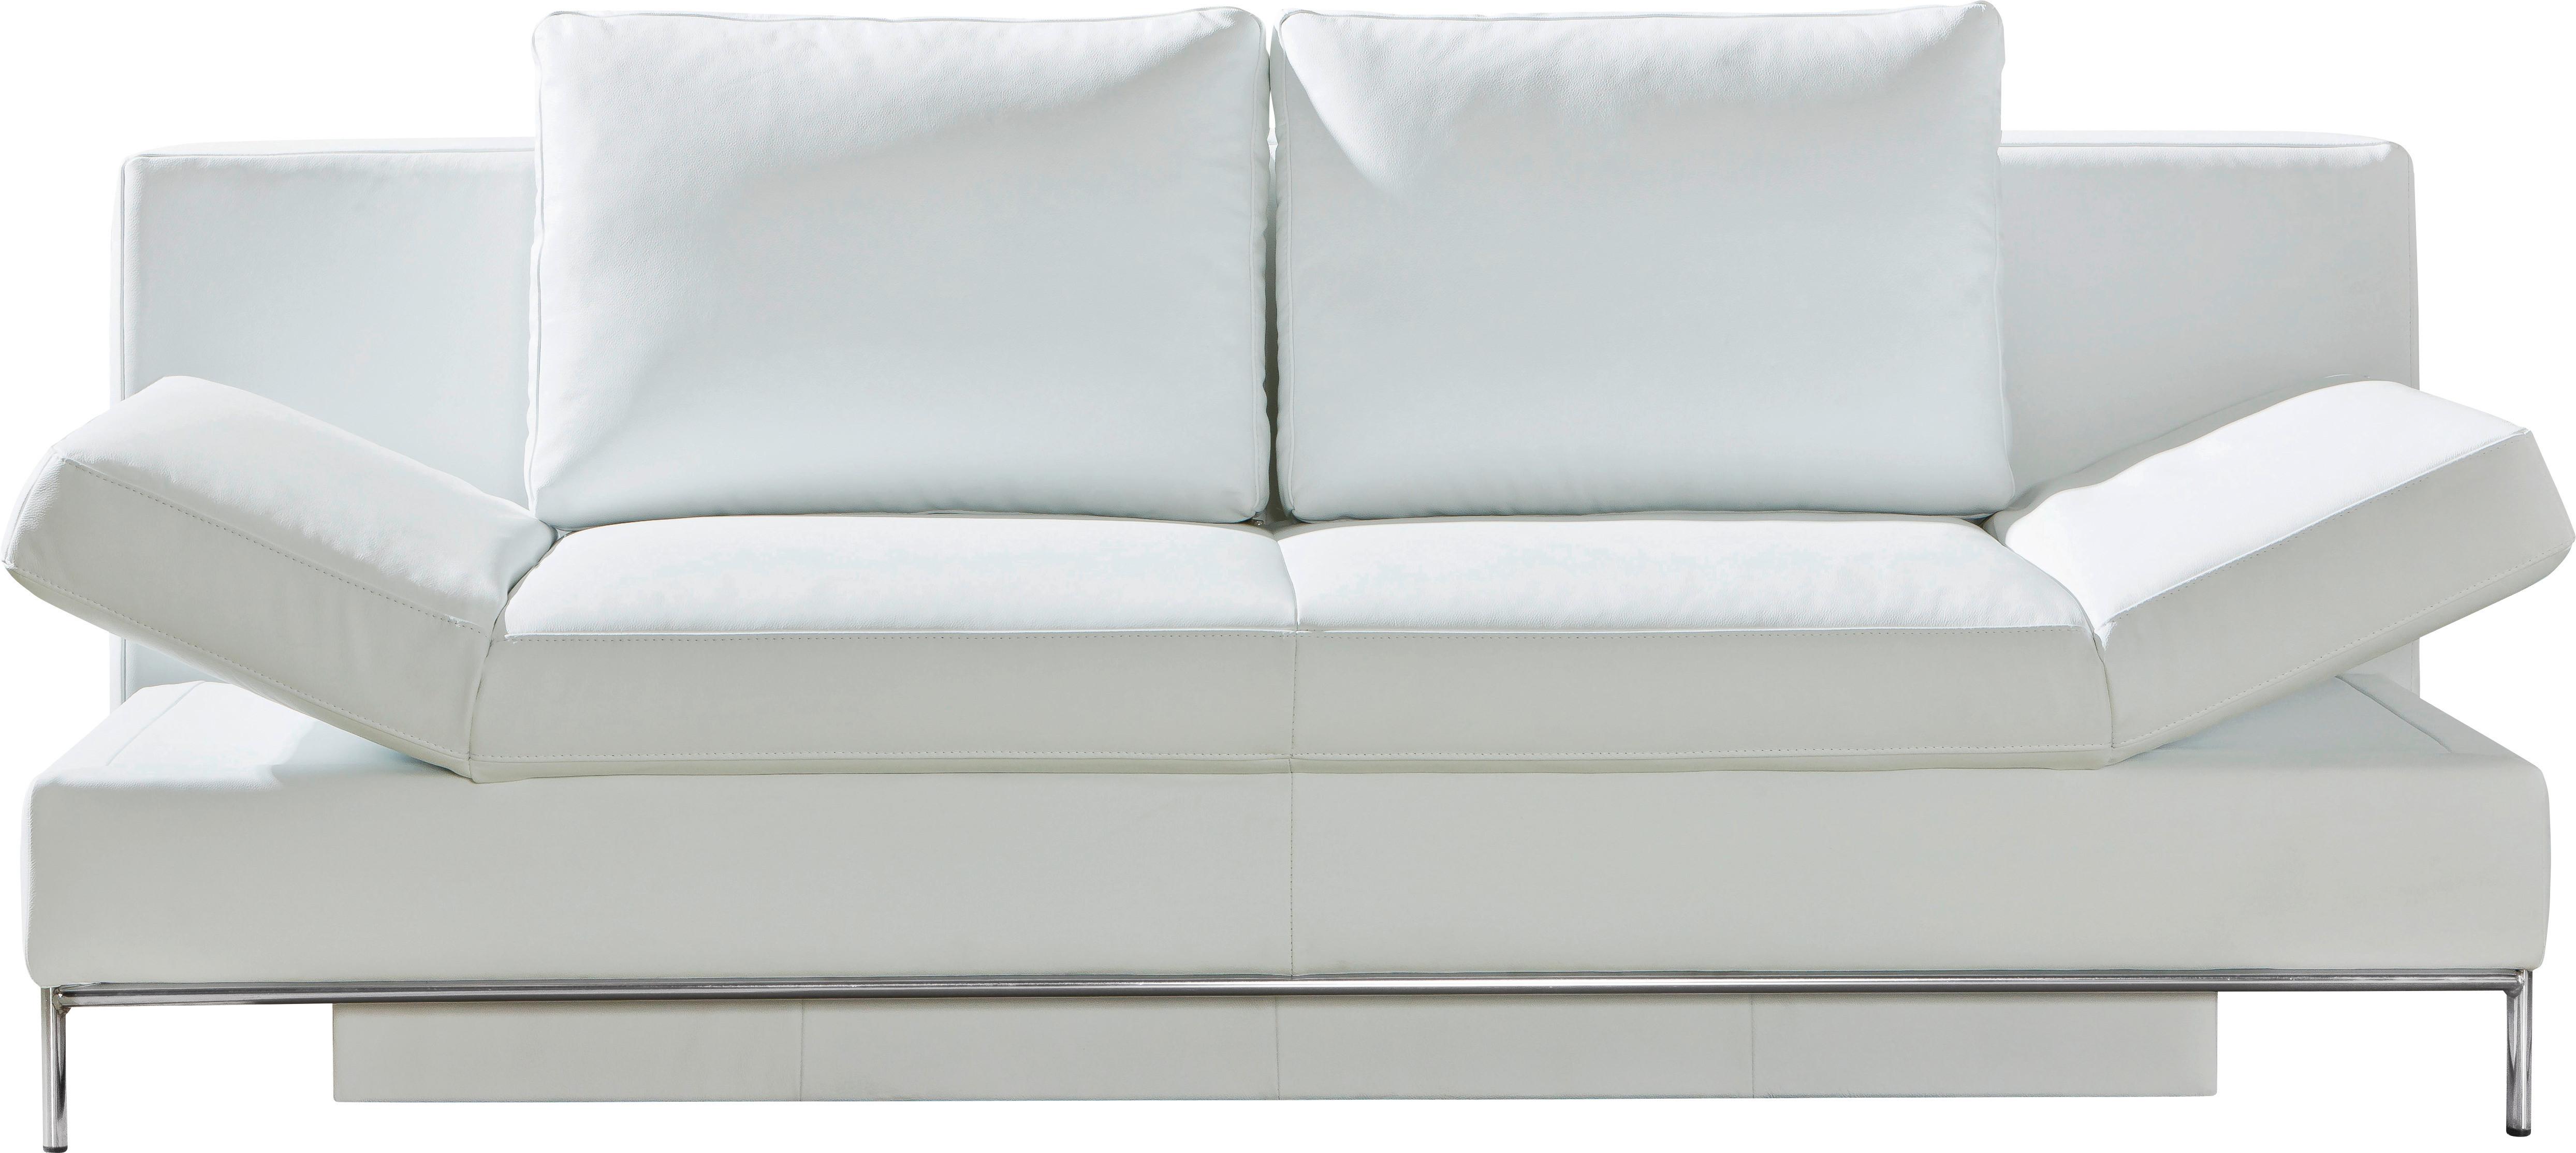 3-Sitzer-Sofa mit Schlaffunkt. und Bettkasten Occa Weiß Leder - Chromfarben/Weiß, Design, Leder (203/83/90cm) - Livetastic